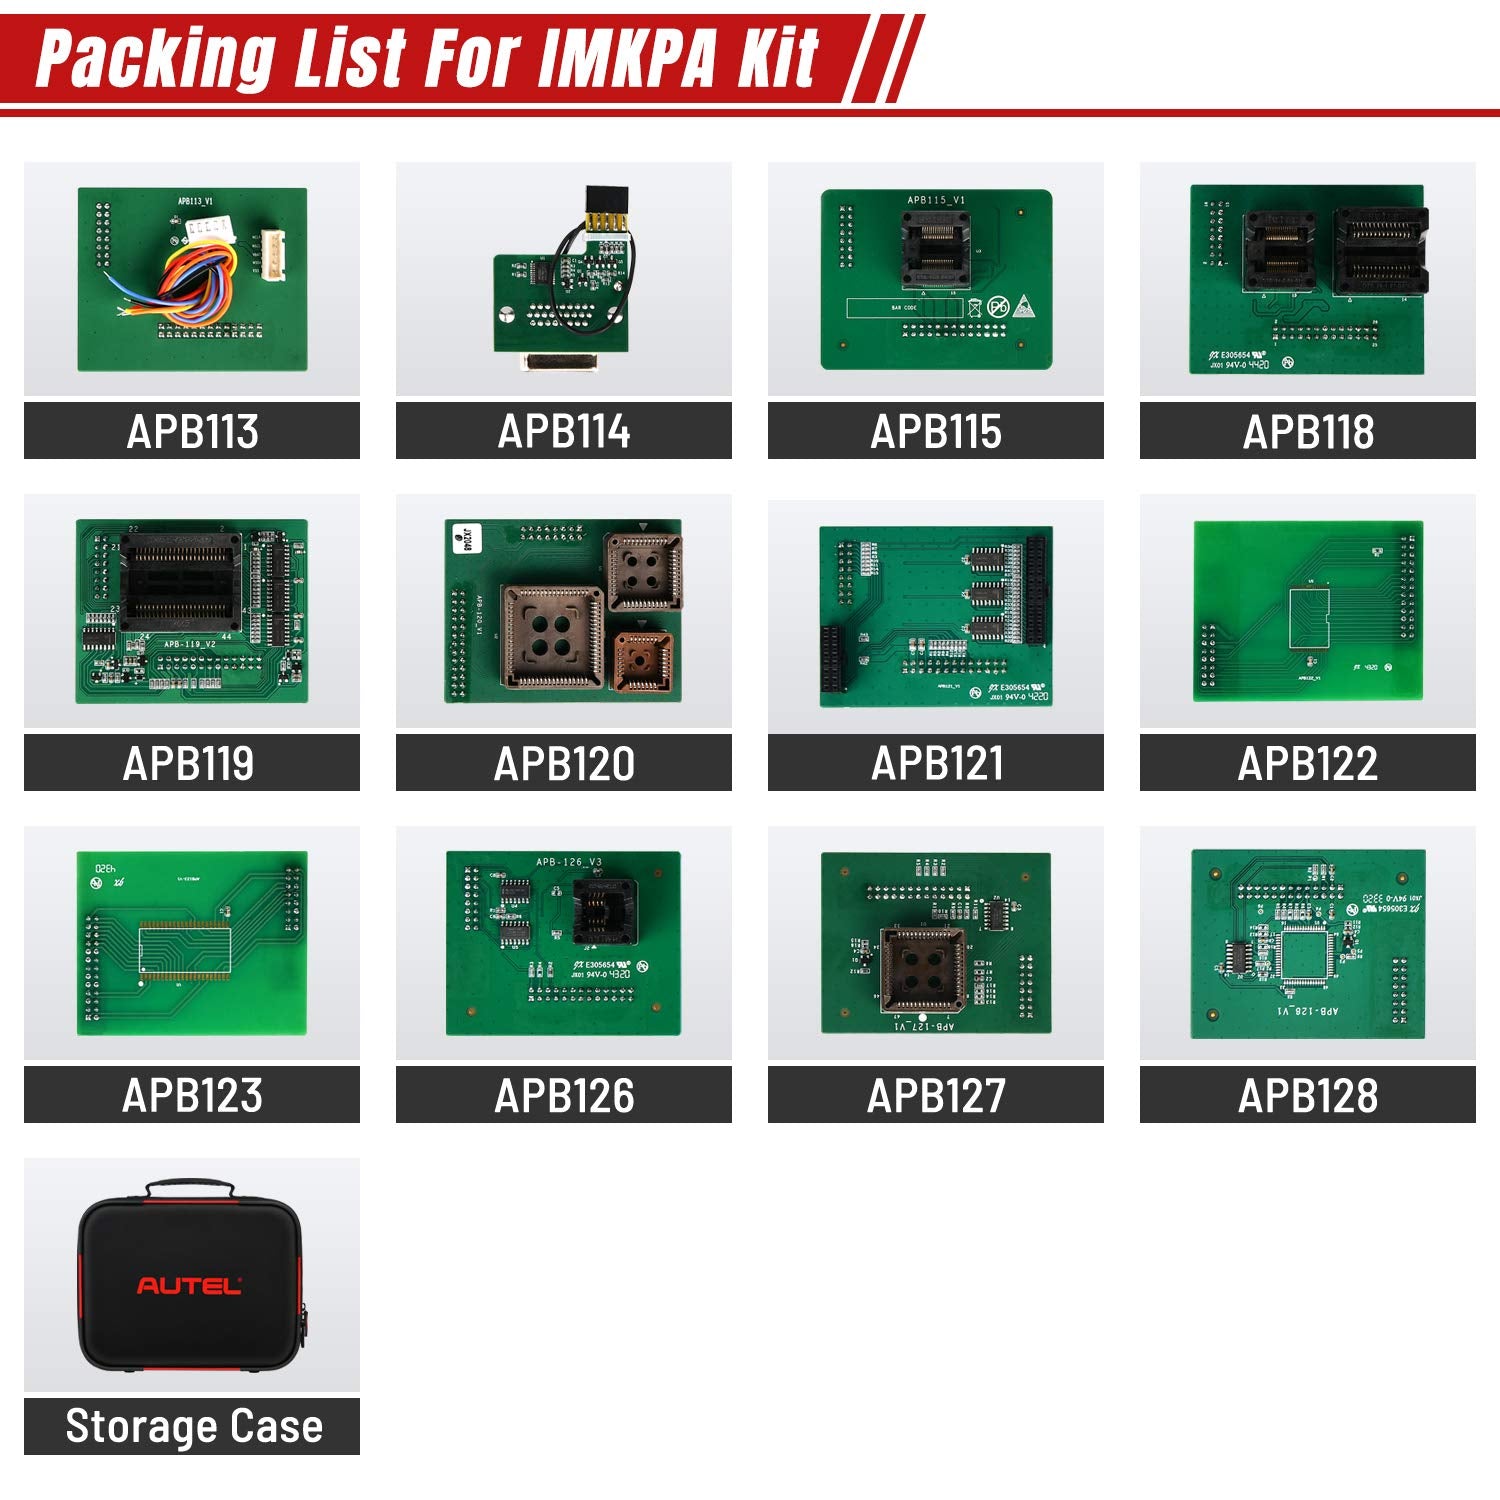 Autel IMKPA Key Programmer Adapter Kit Package List